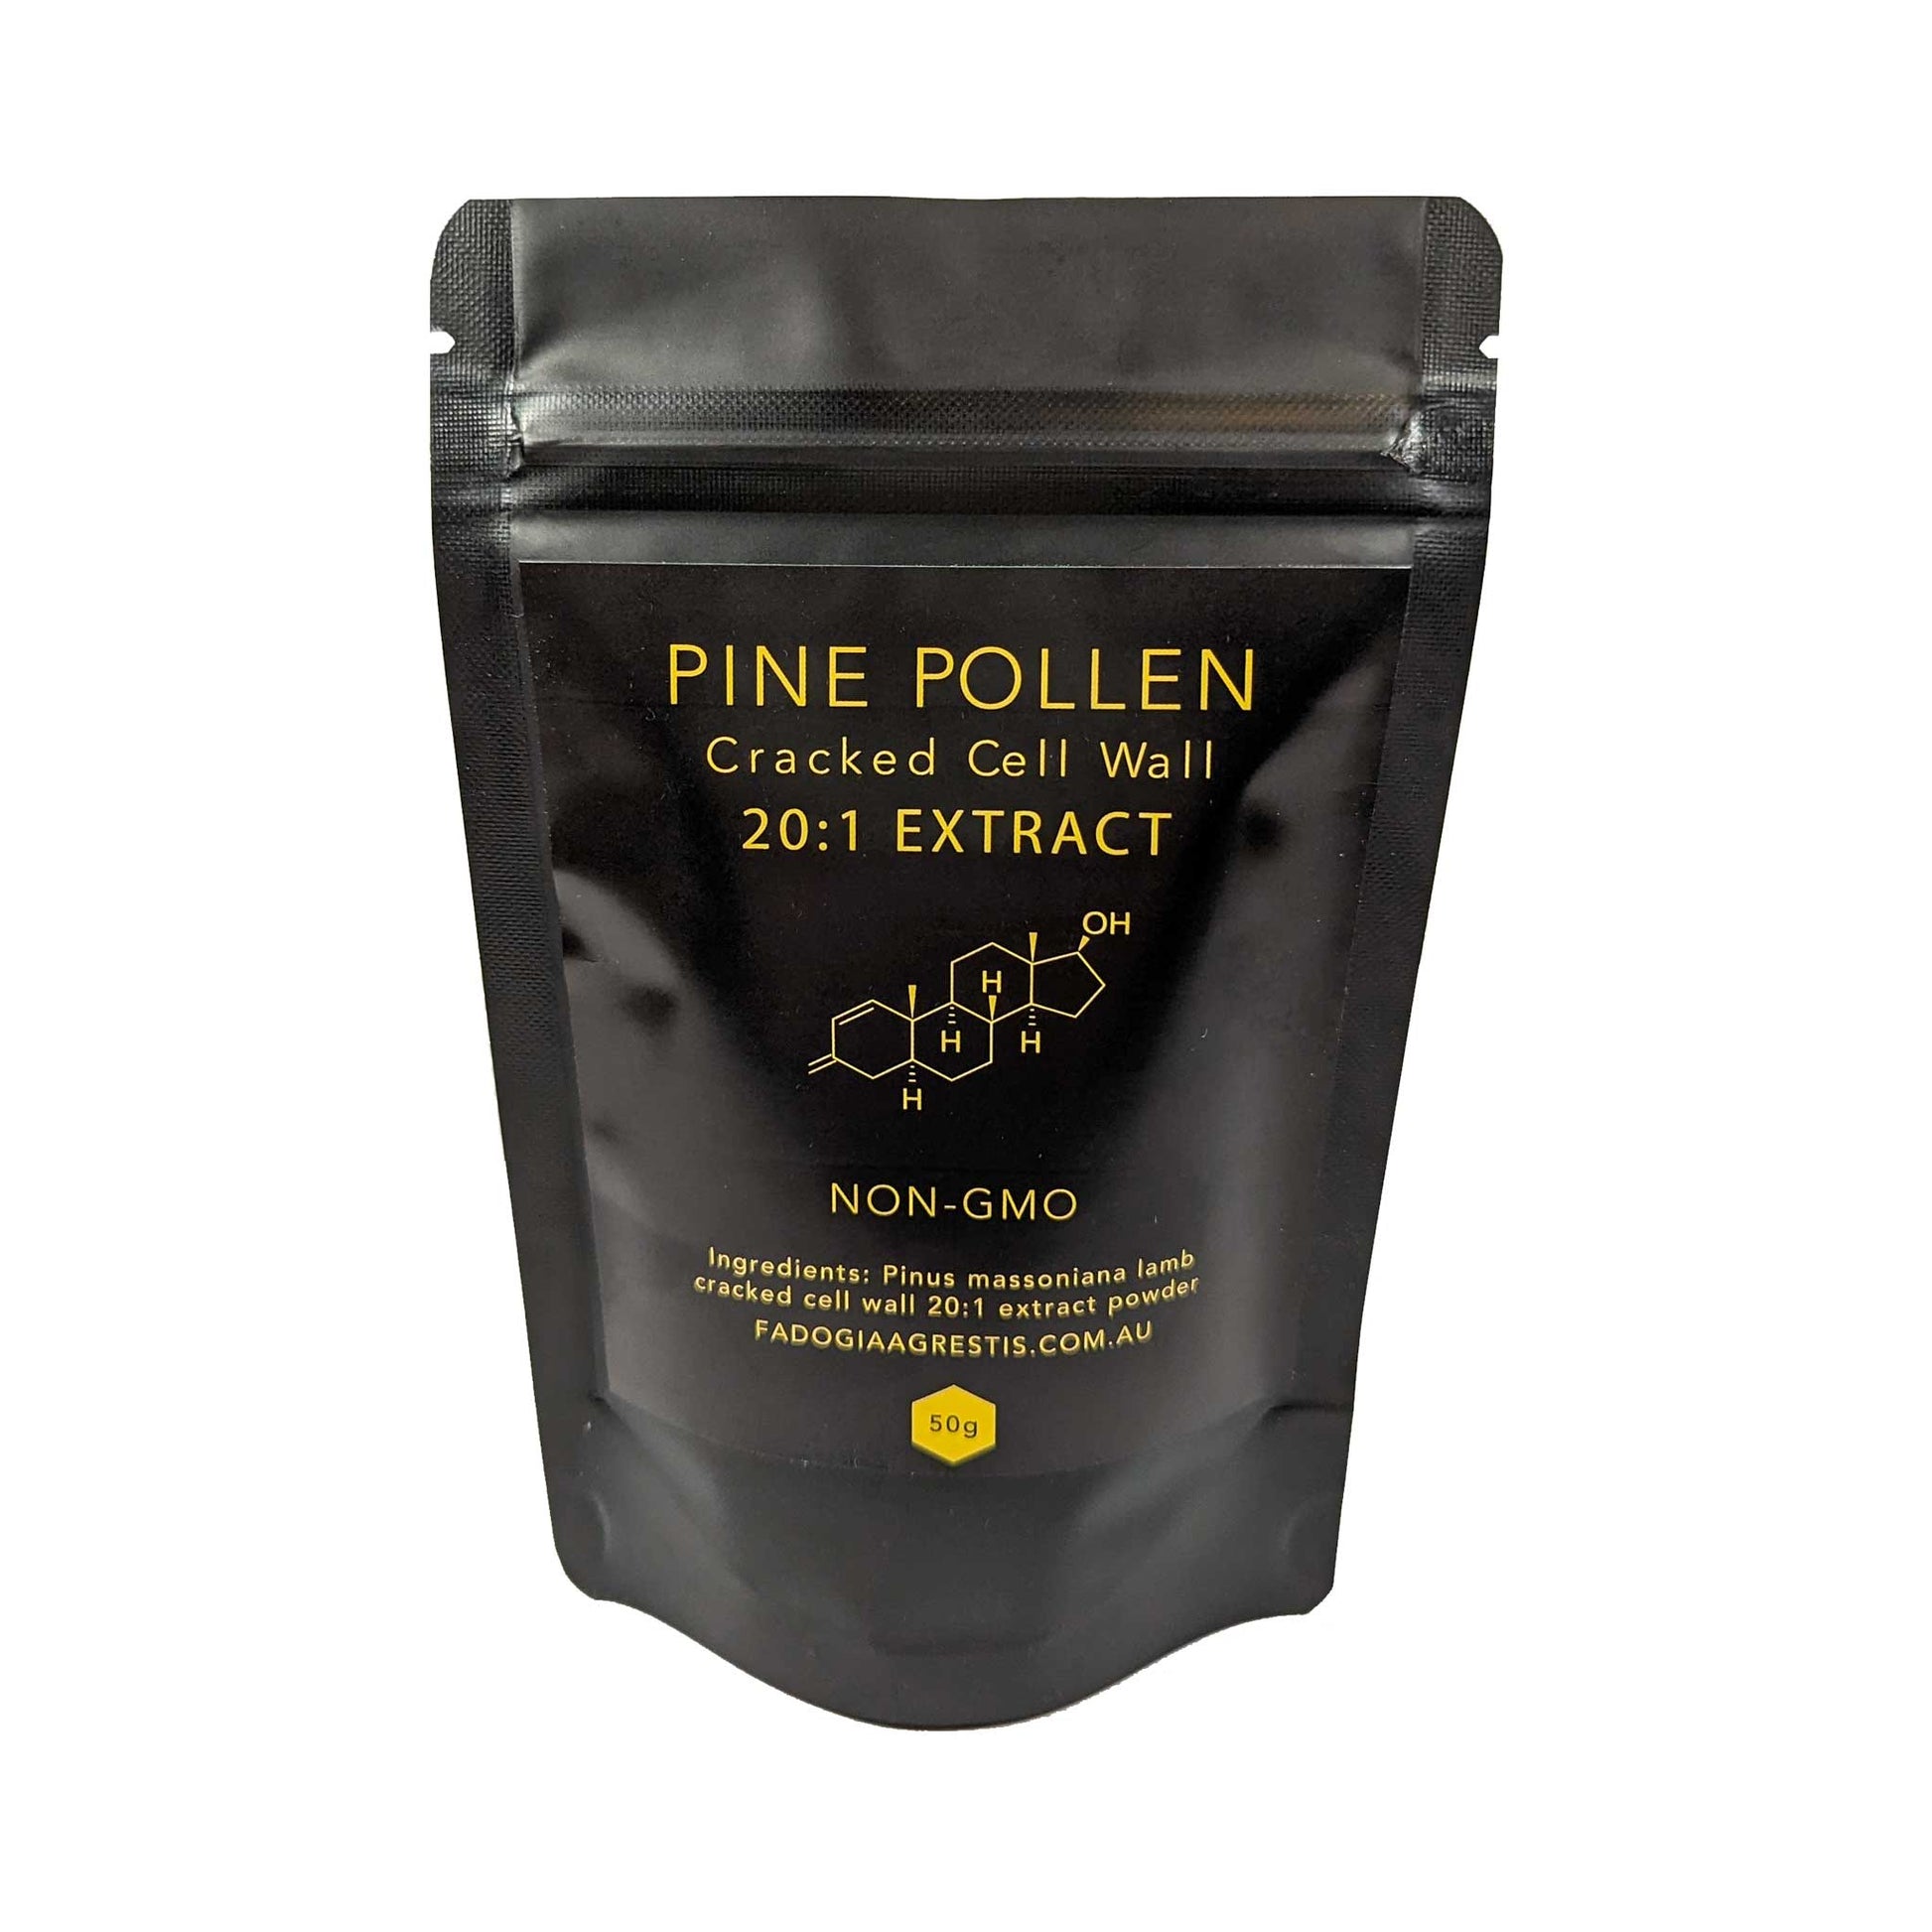 Pine pollen 20:1 extract. Cracked cell wall. Non GMO. Pine pollen powder.